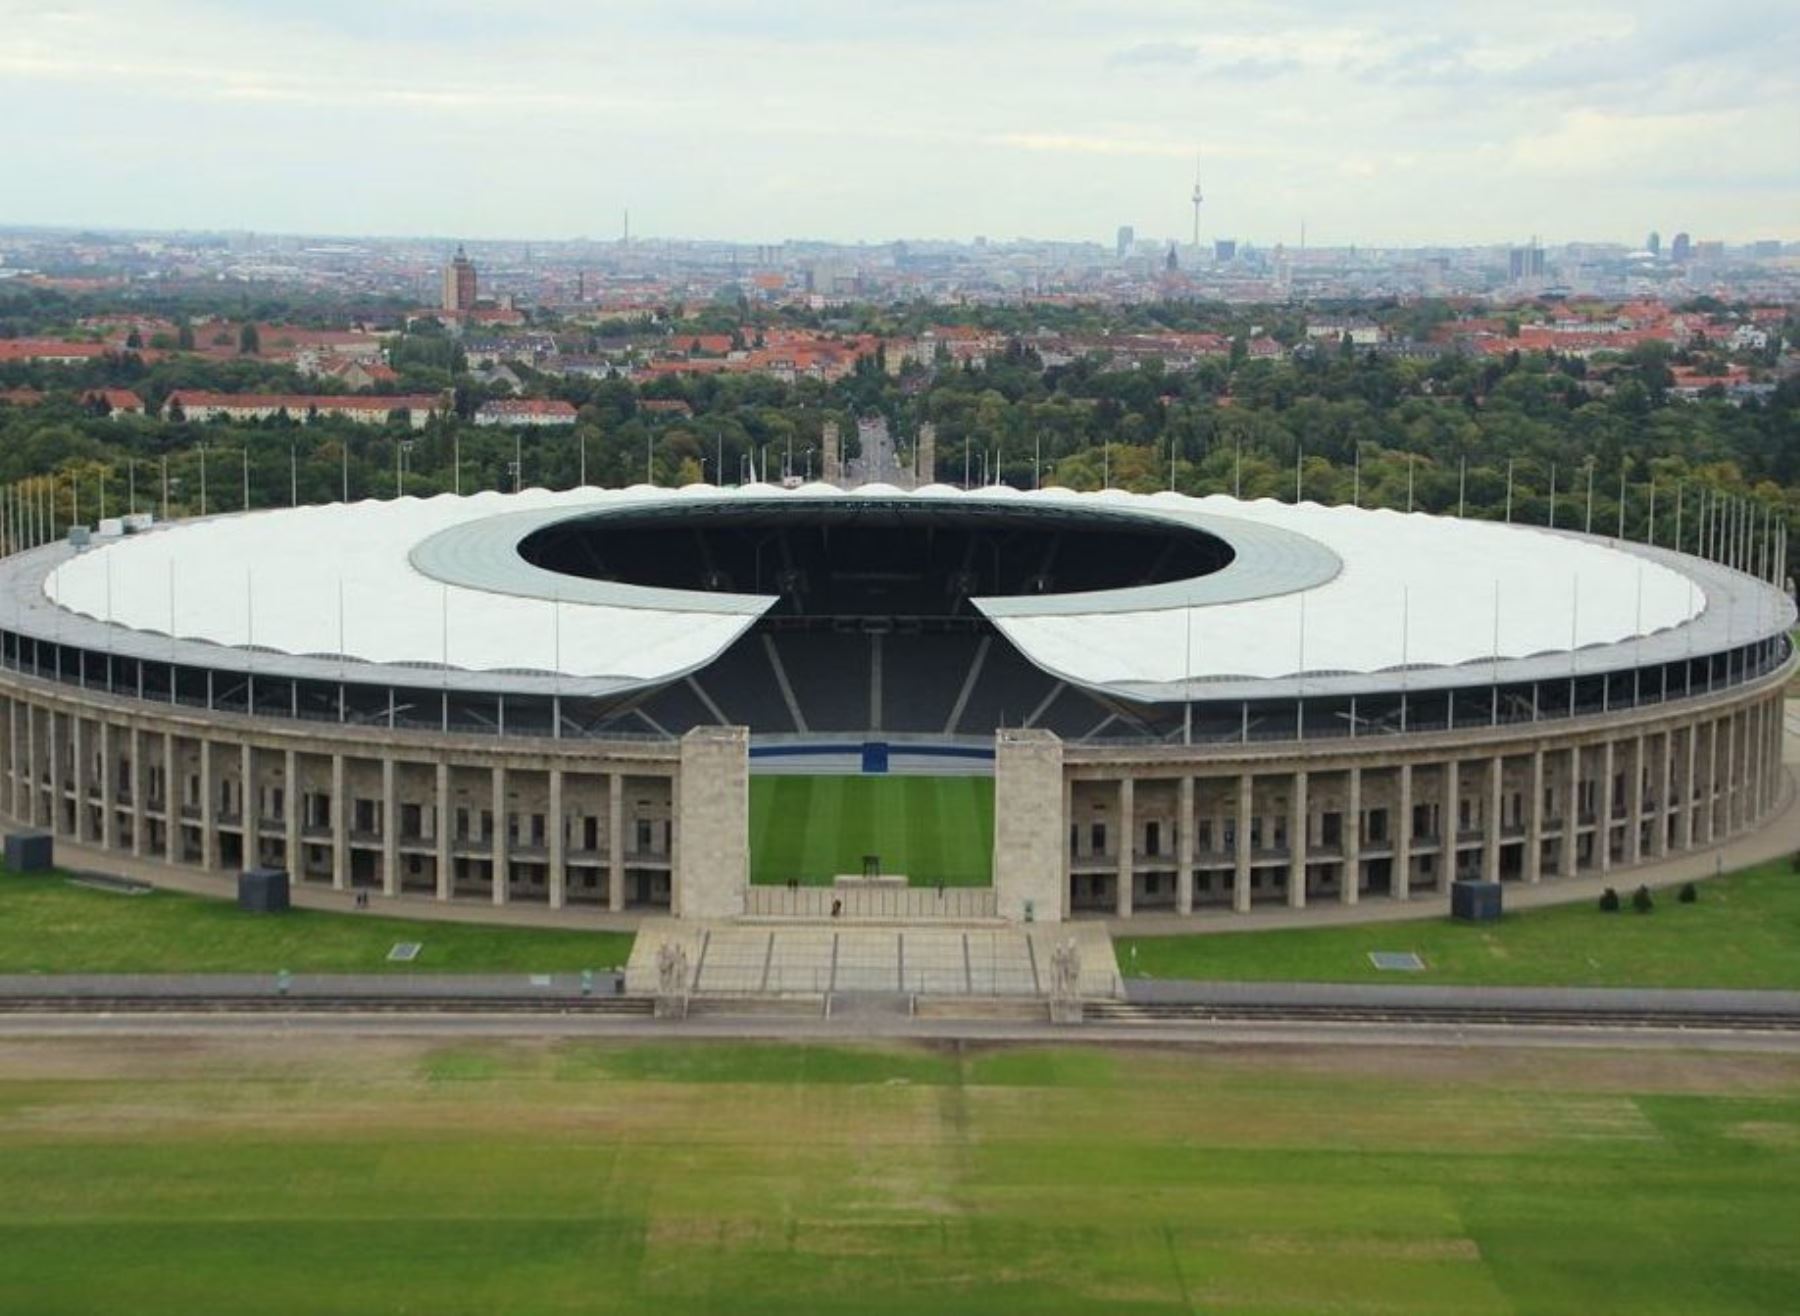 El Estadio Olímpico de Berlín producirá su propia energía